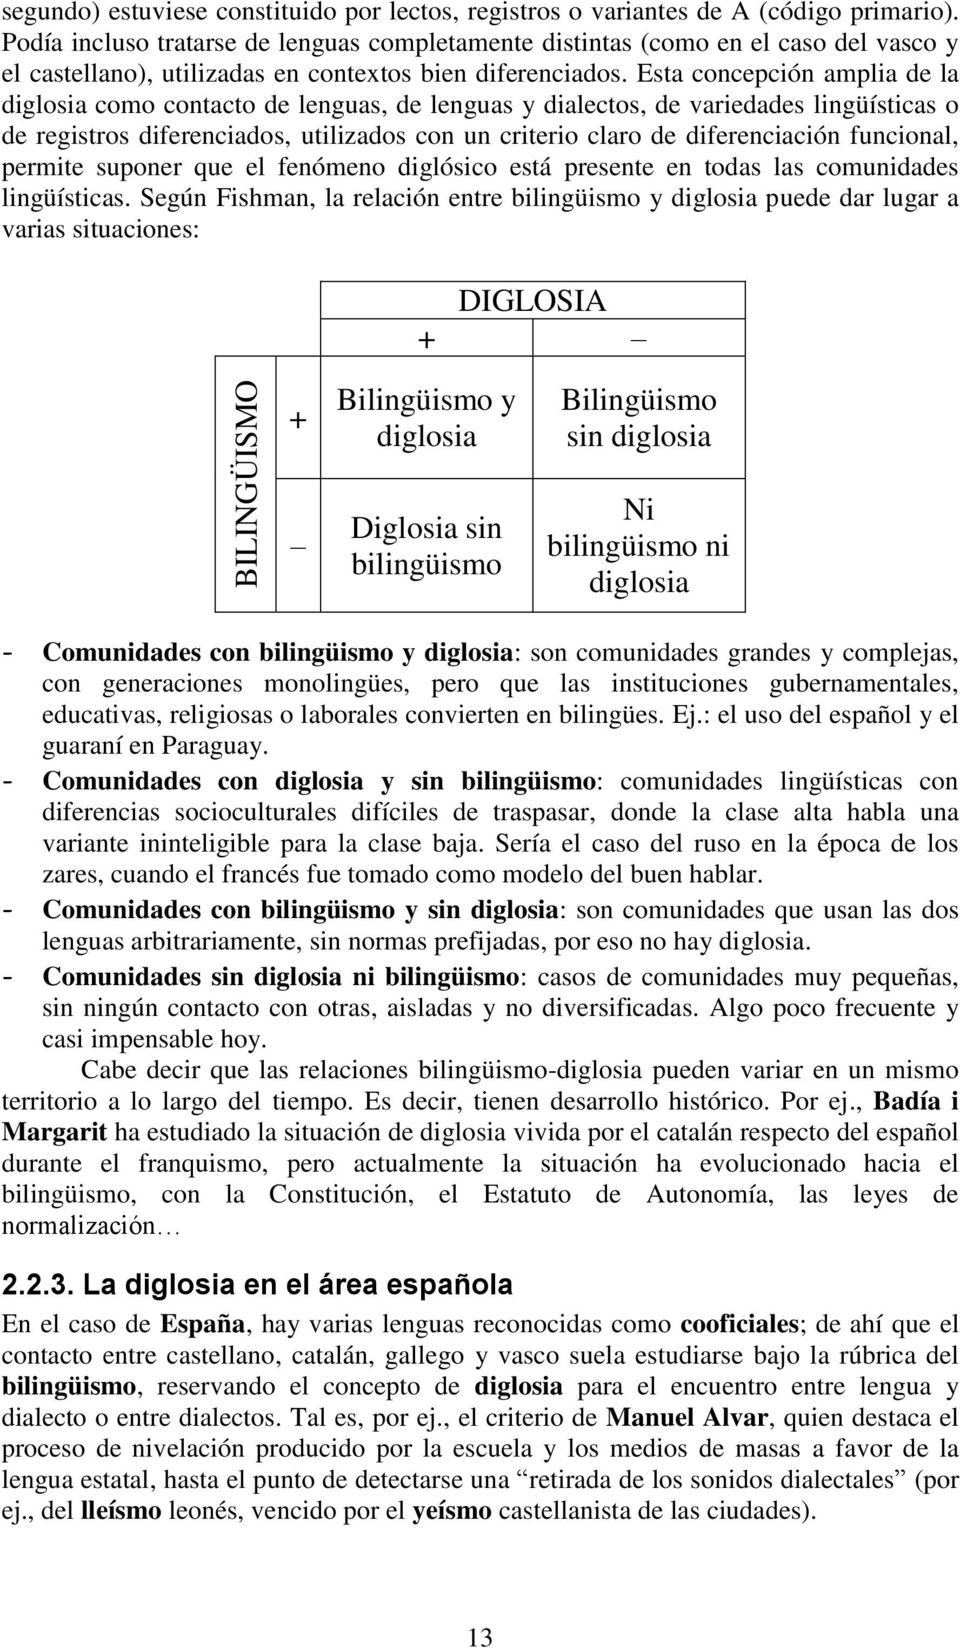 Esta concepción amplia de la diglosia como contacto de lenguas, de lenguas y dialectos, de variedades lingüísticas o de registros diferenciados, utilizados con un criterio claro de diferenciación